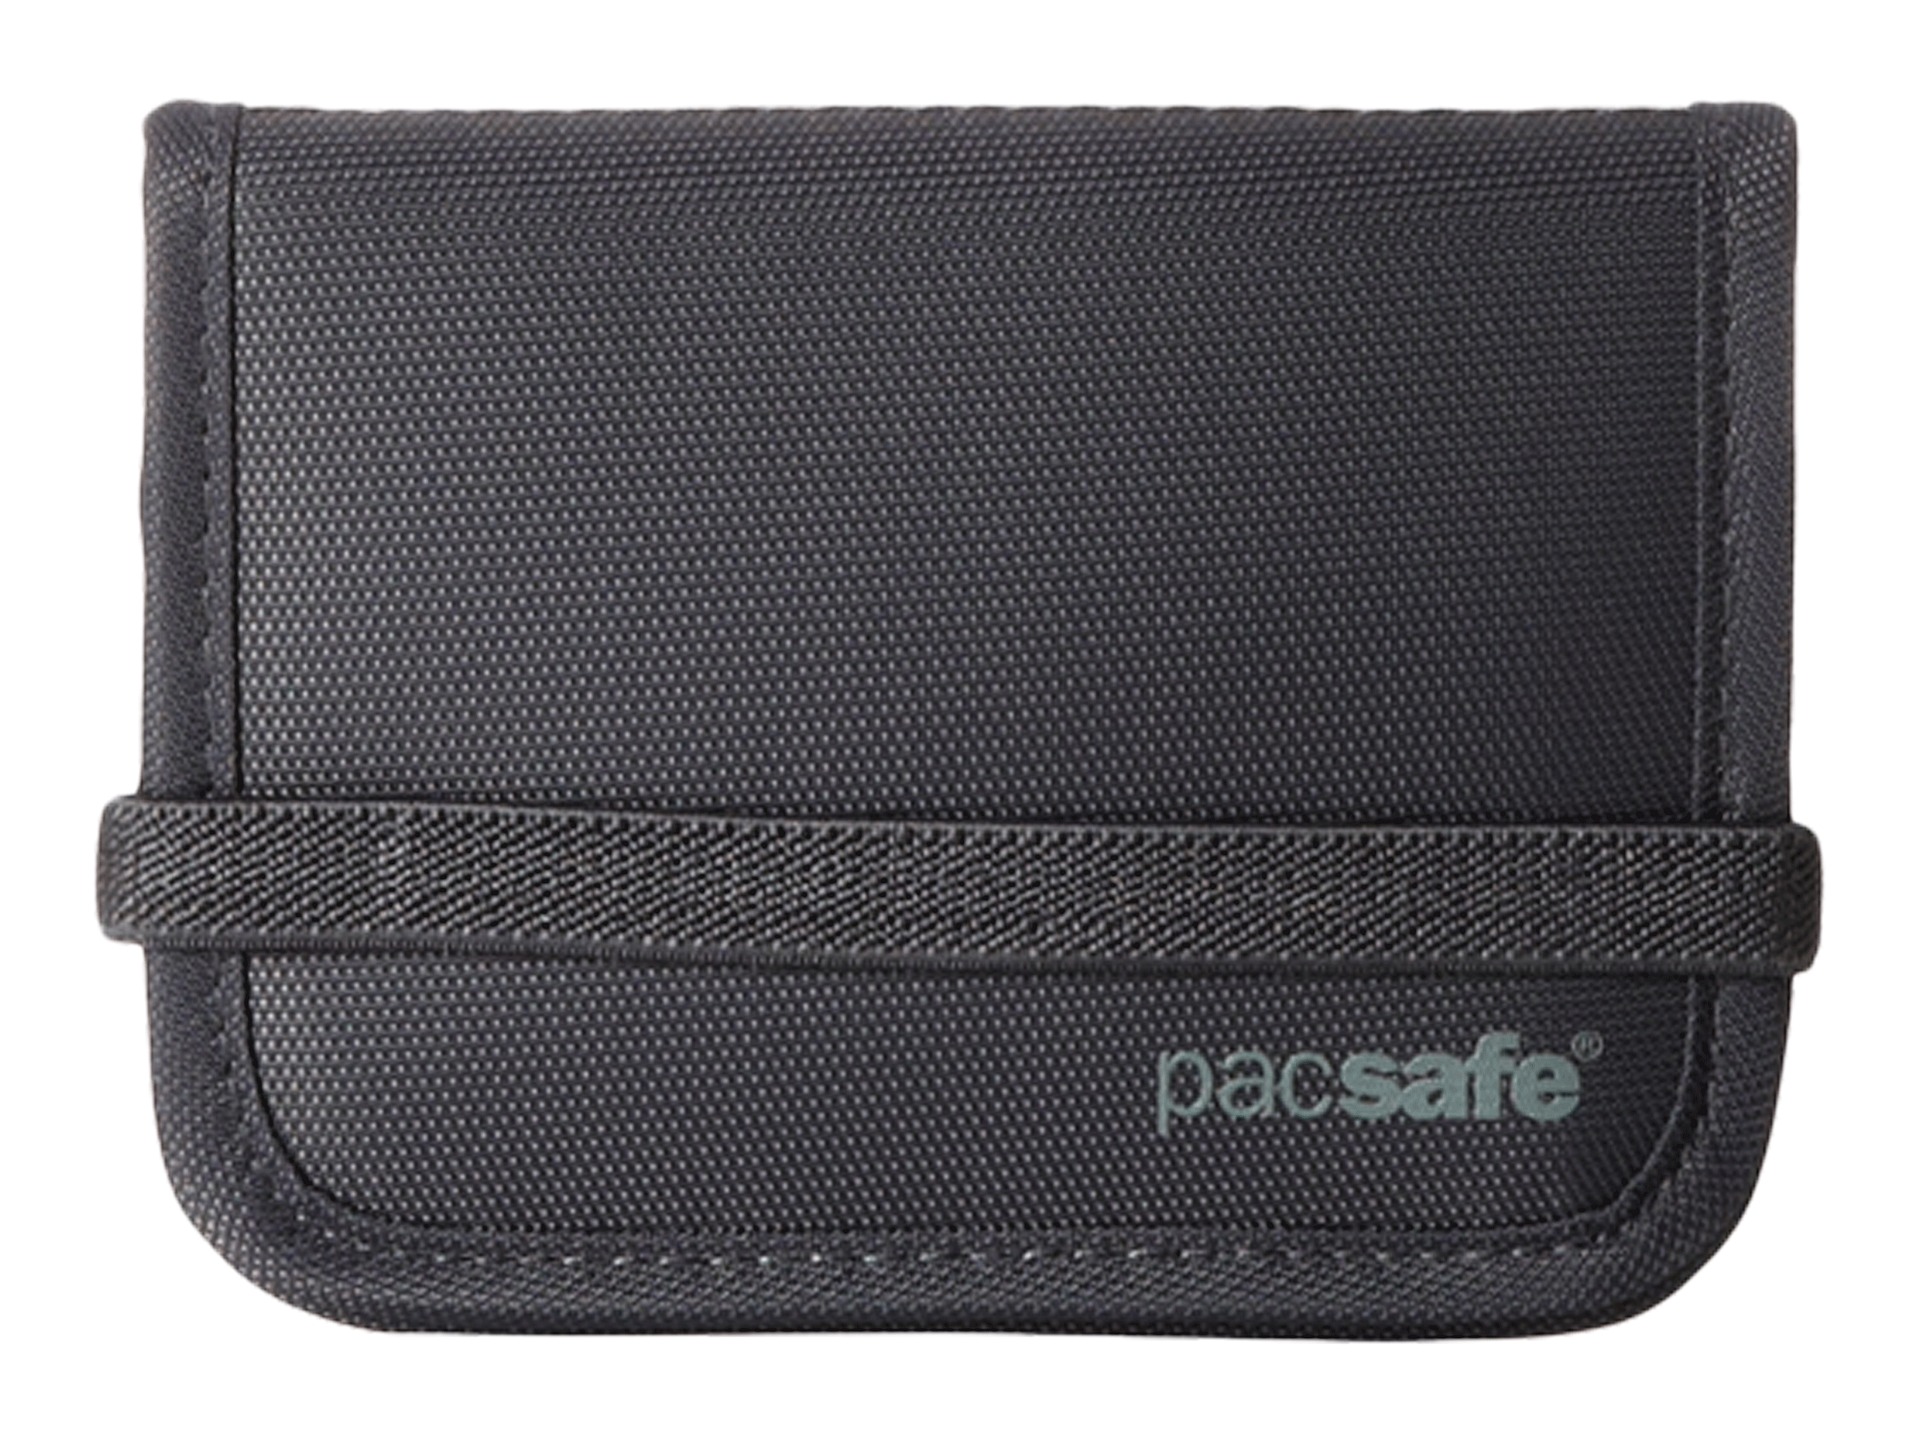 Pacsafe RFID Tec™ 50 RFID Blocking Compact Bifold Wallet